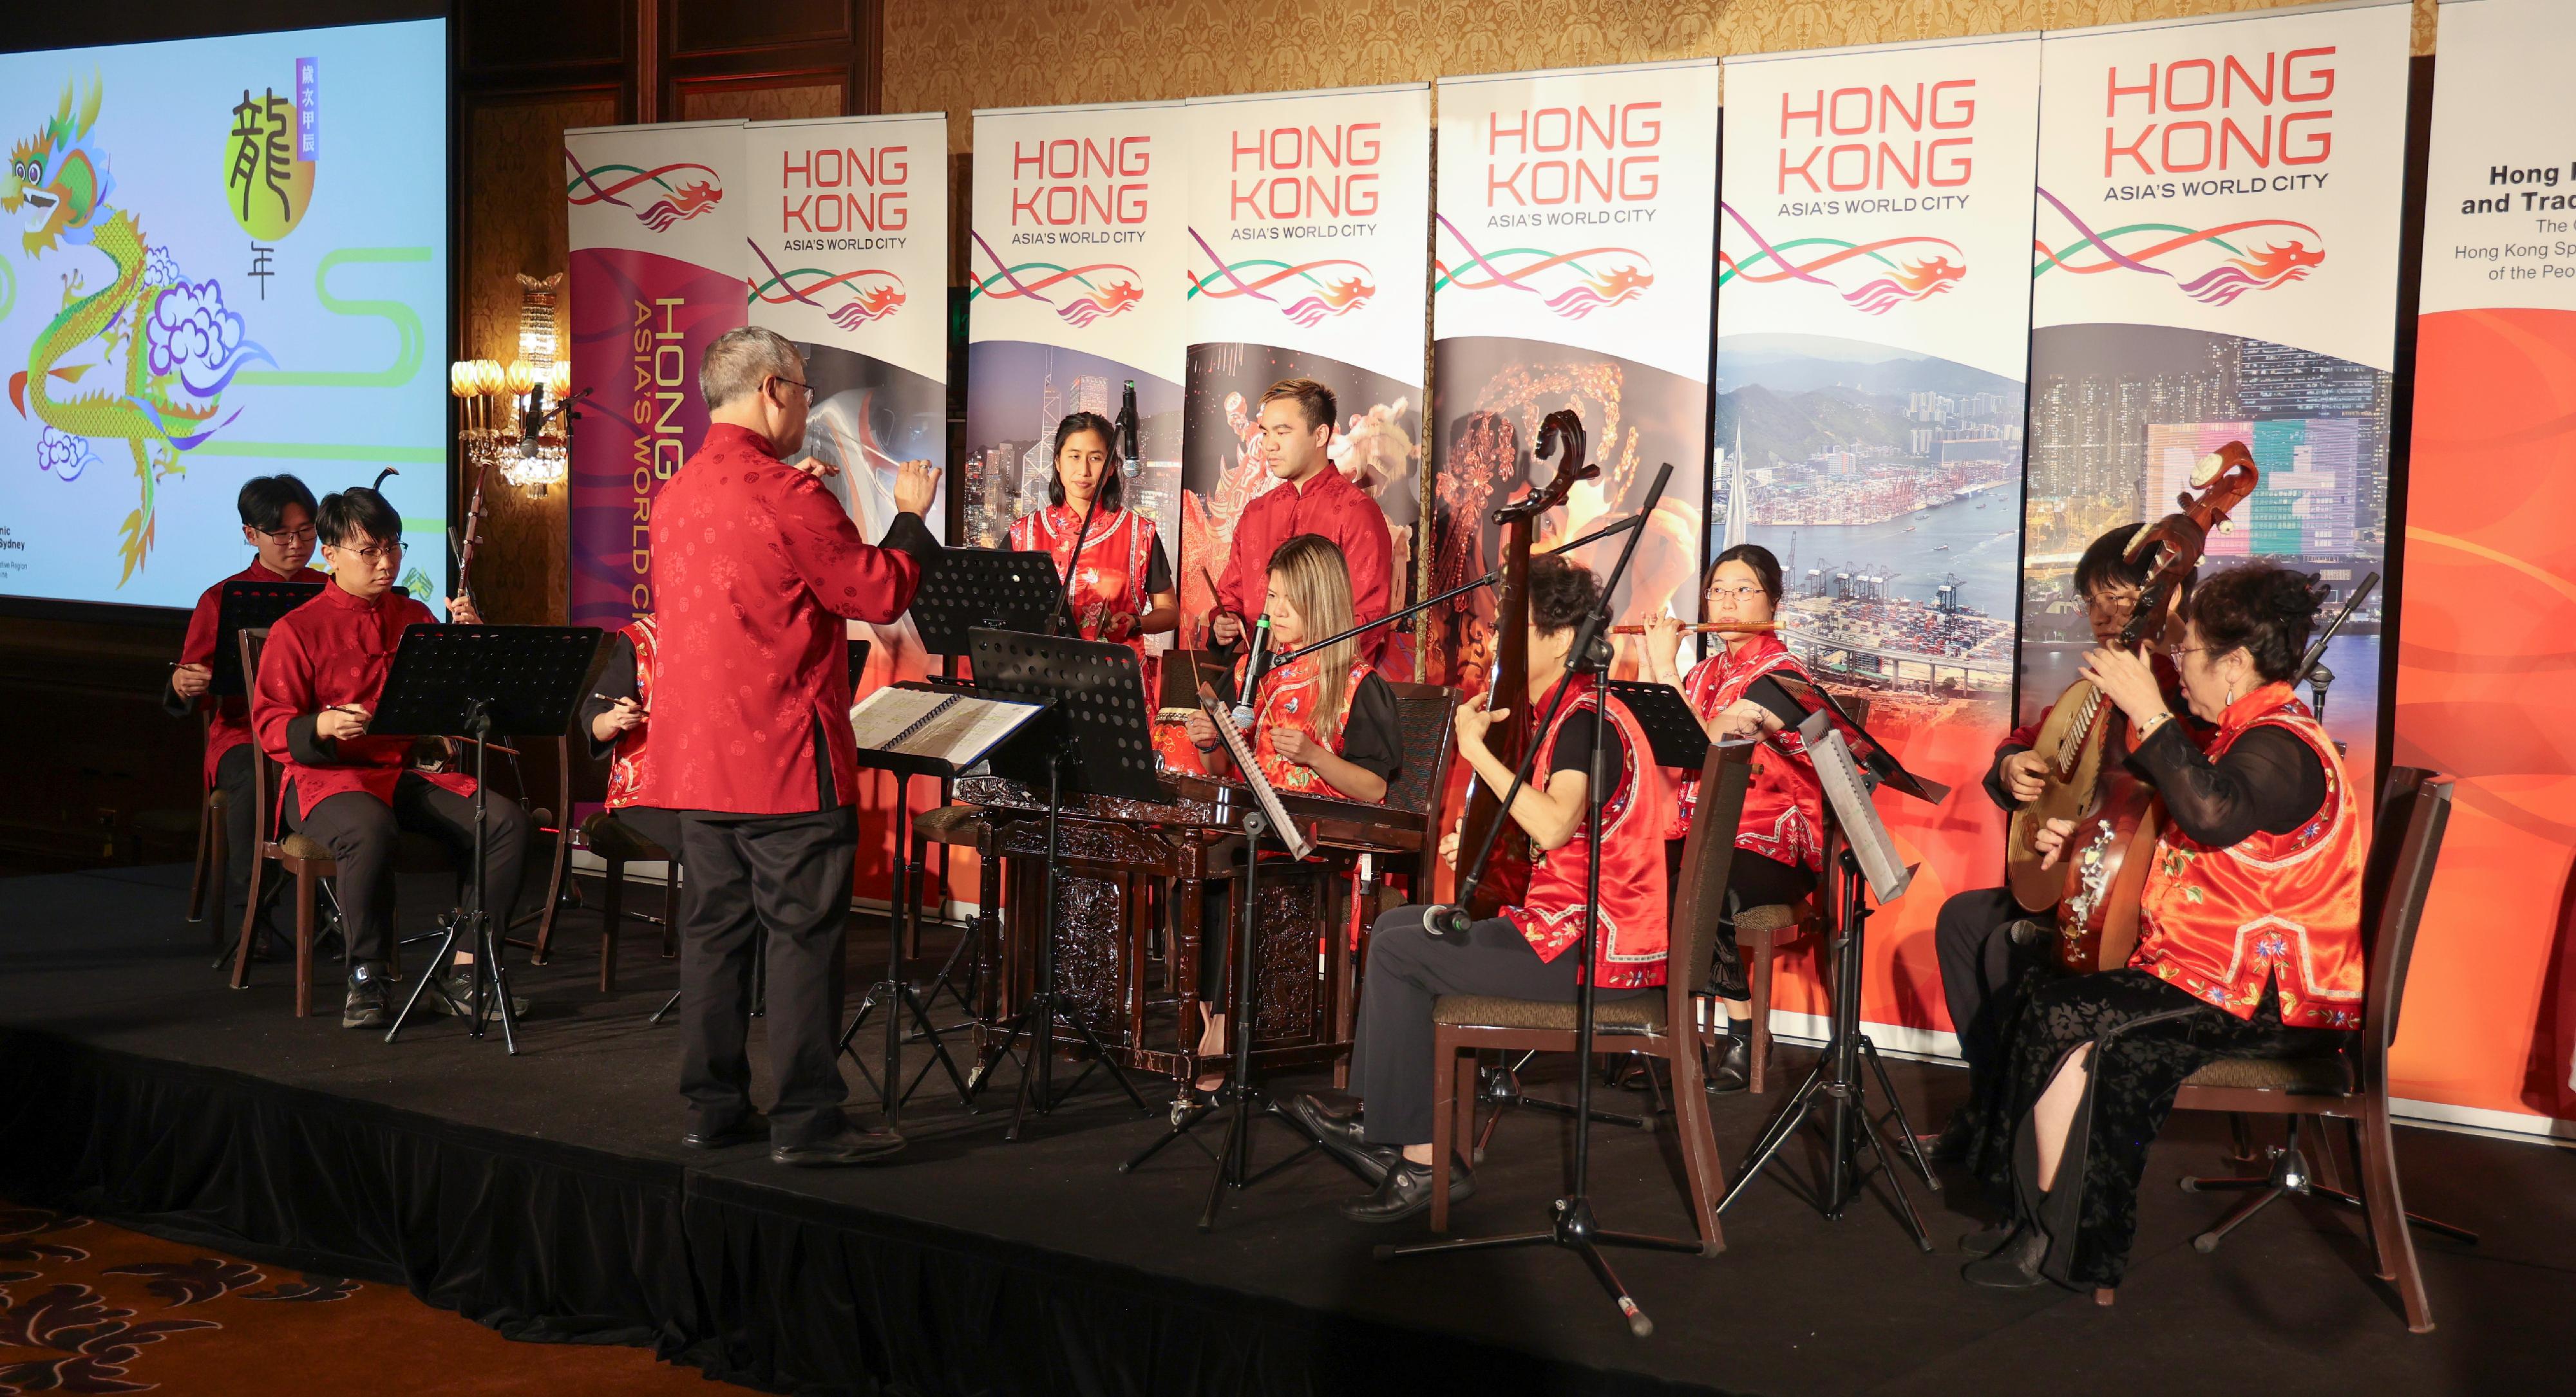 香港駐悉尼經濟貿易辦事處昨日（二月十五日）在澳洲墨爾本舉行酒會，慶祝農曆新年。酒會上安排了中樂表演，以推廣中國傳統音樂。